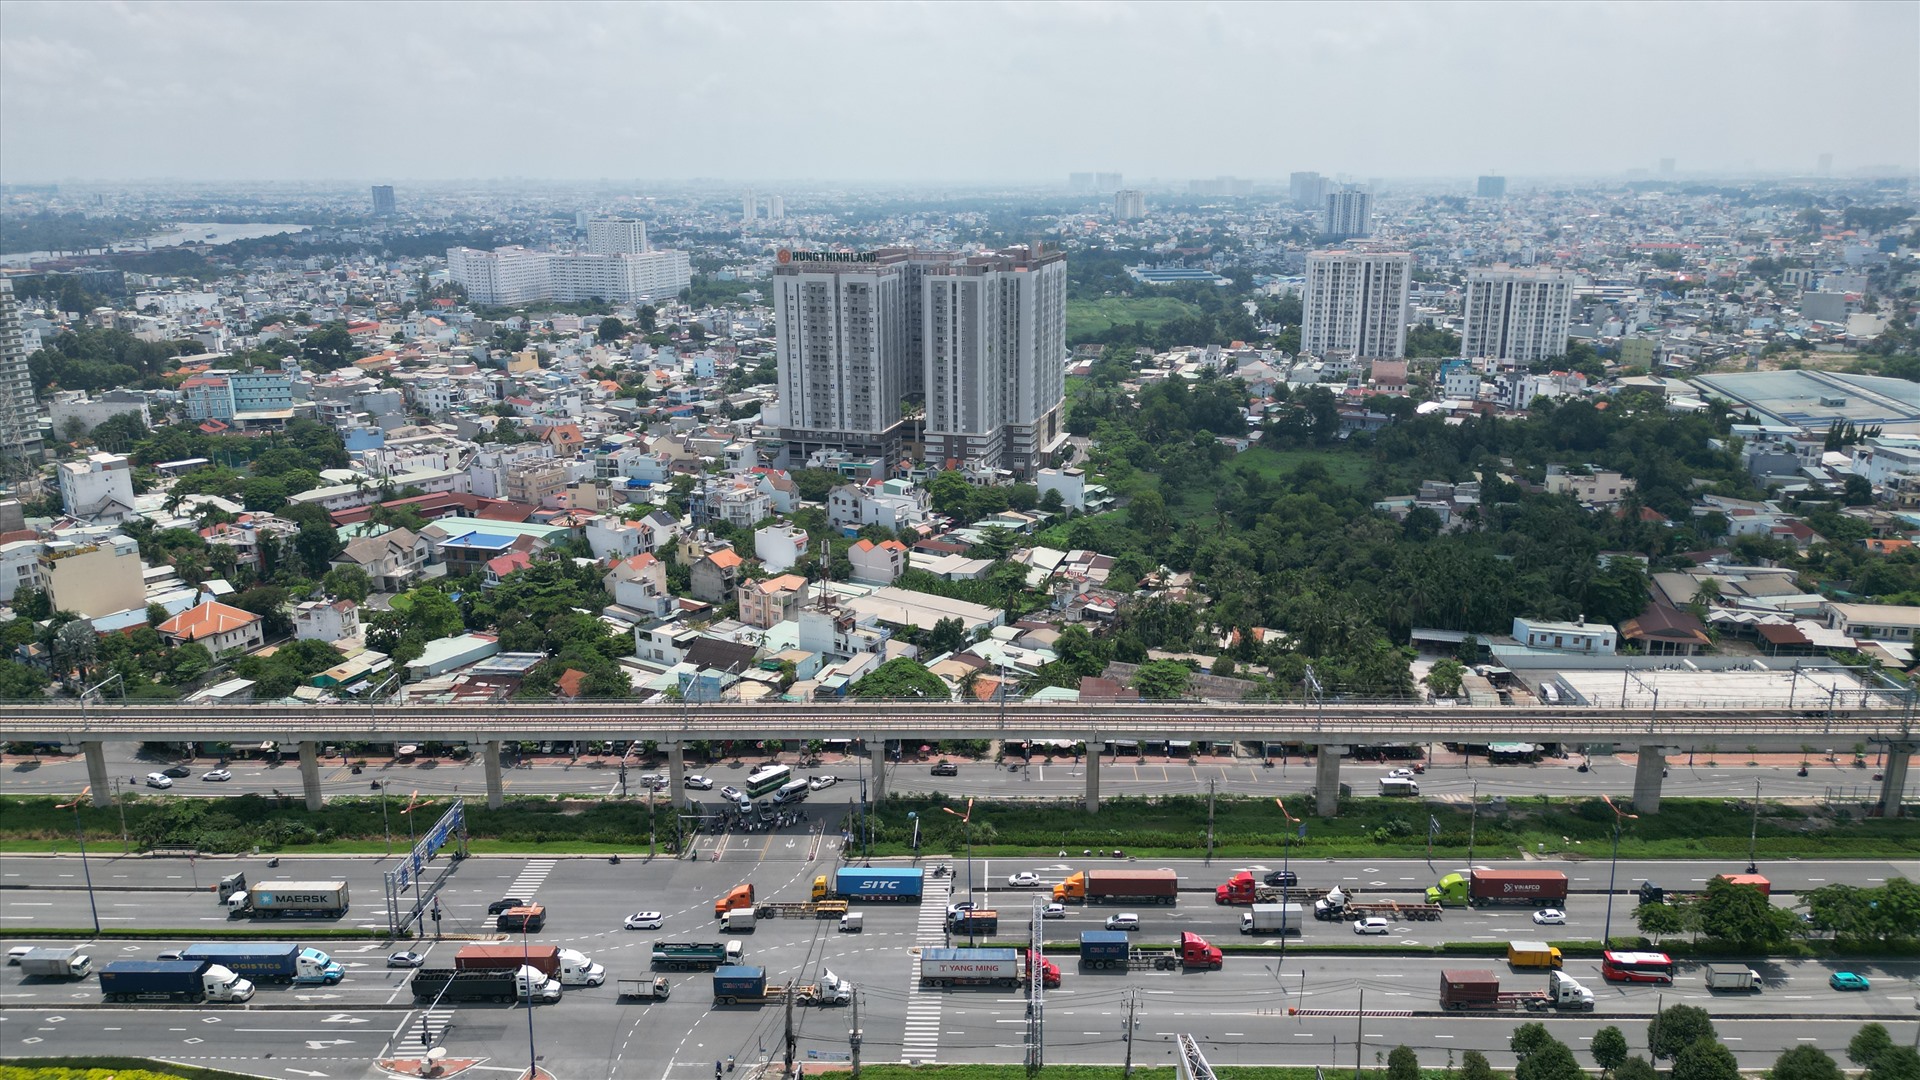 Cũng theo ghi nhận, đoạn nút giao Bình Thái (trên xa lộ Hà Nội) đến đường Phạm Văn Đồng dài 2,5 km tuy chưa triển khai xây dựng nhưng đã có hàng loạt chung cư vây quanh.